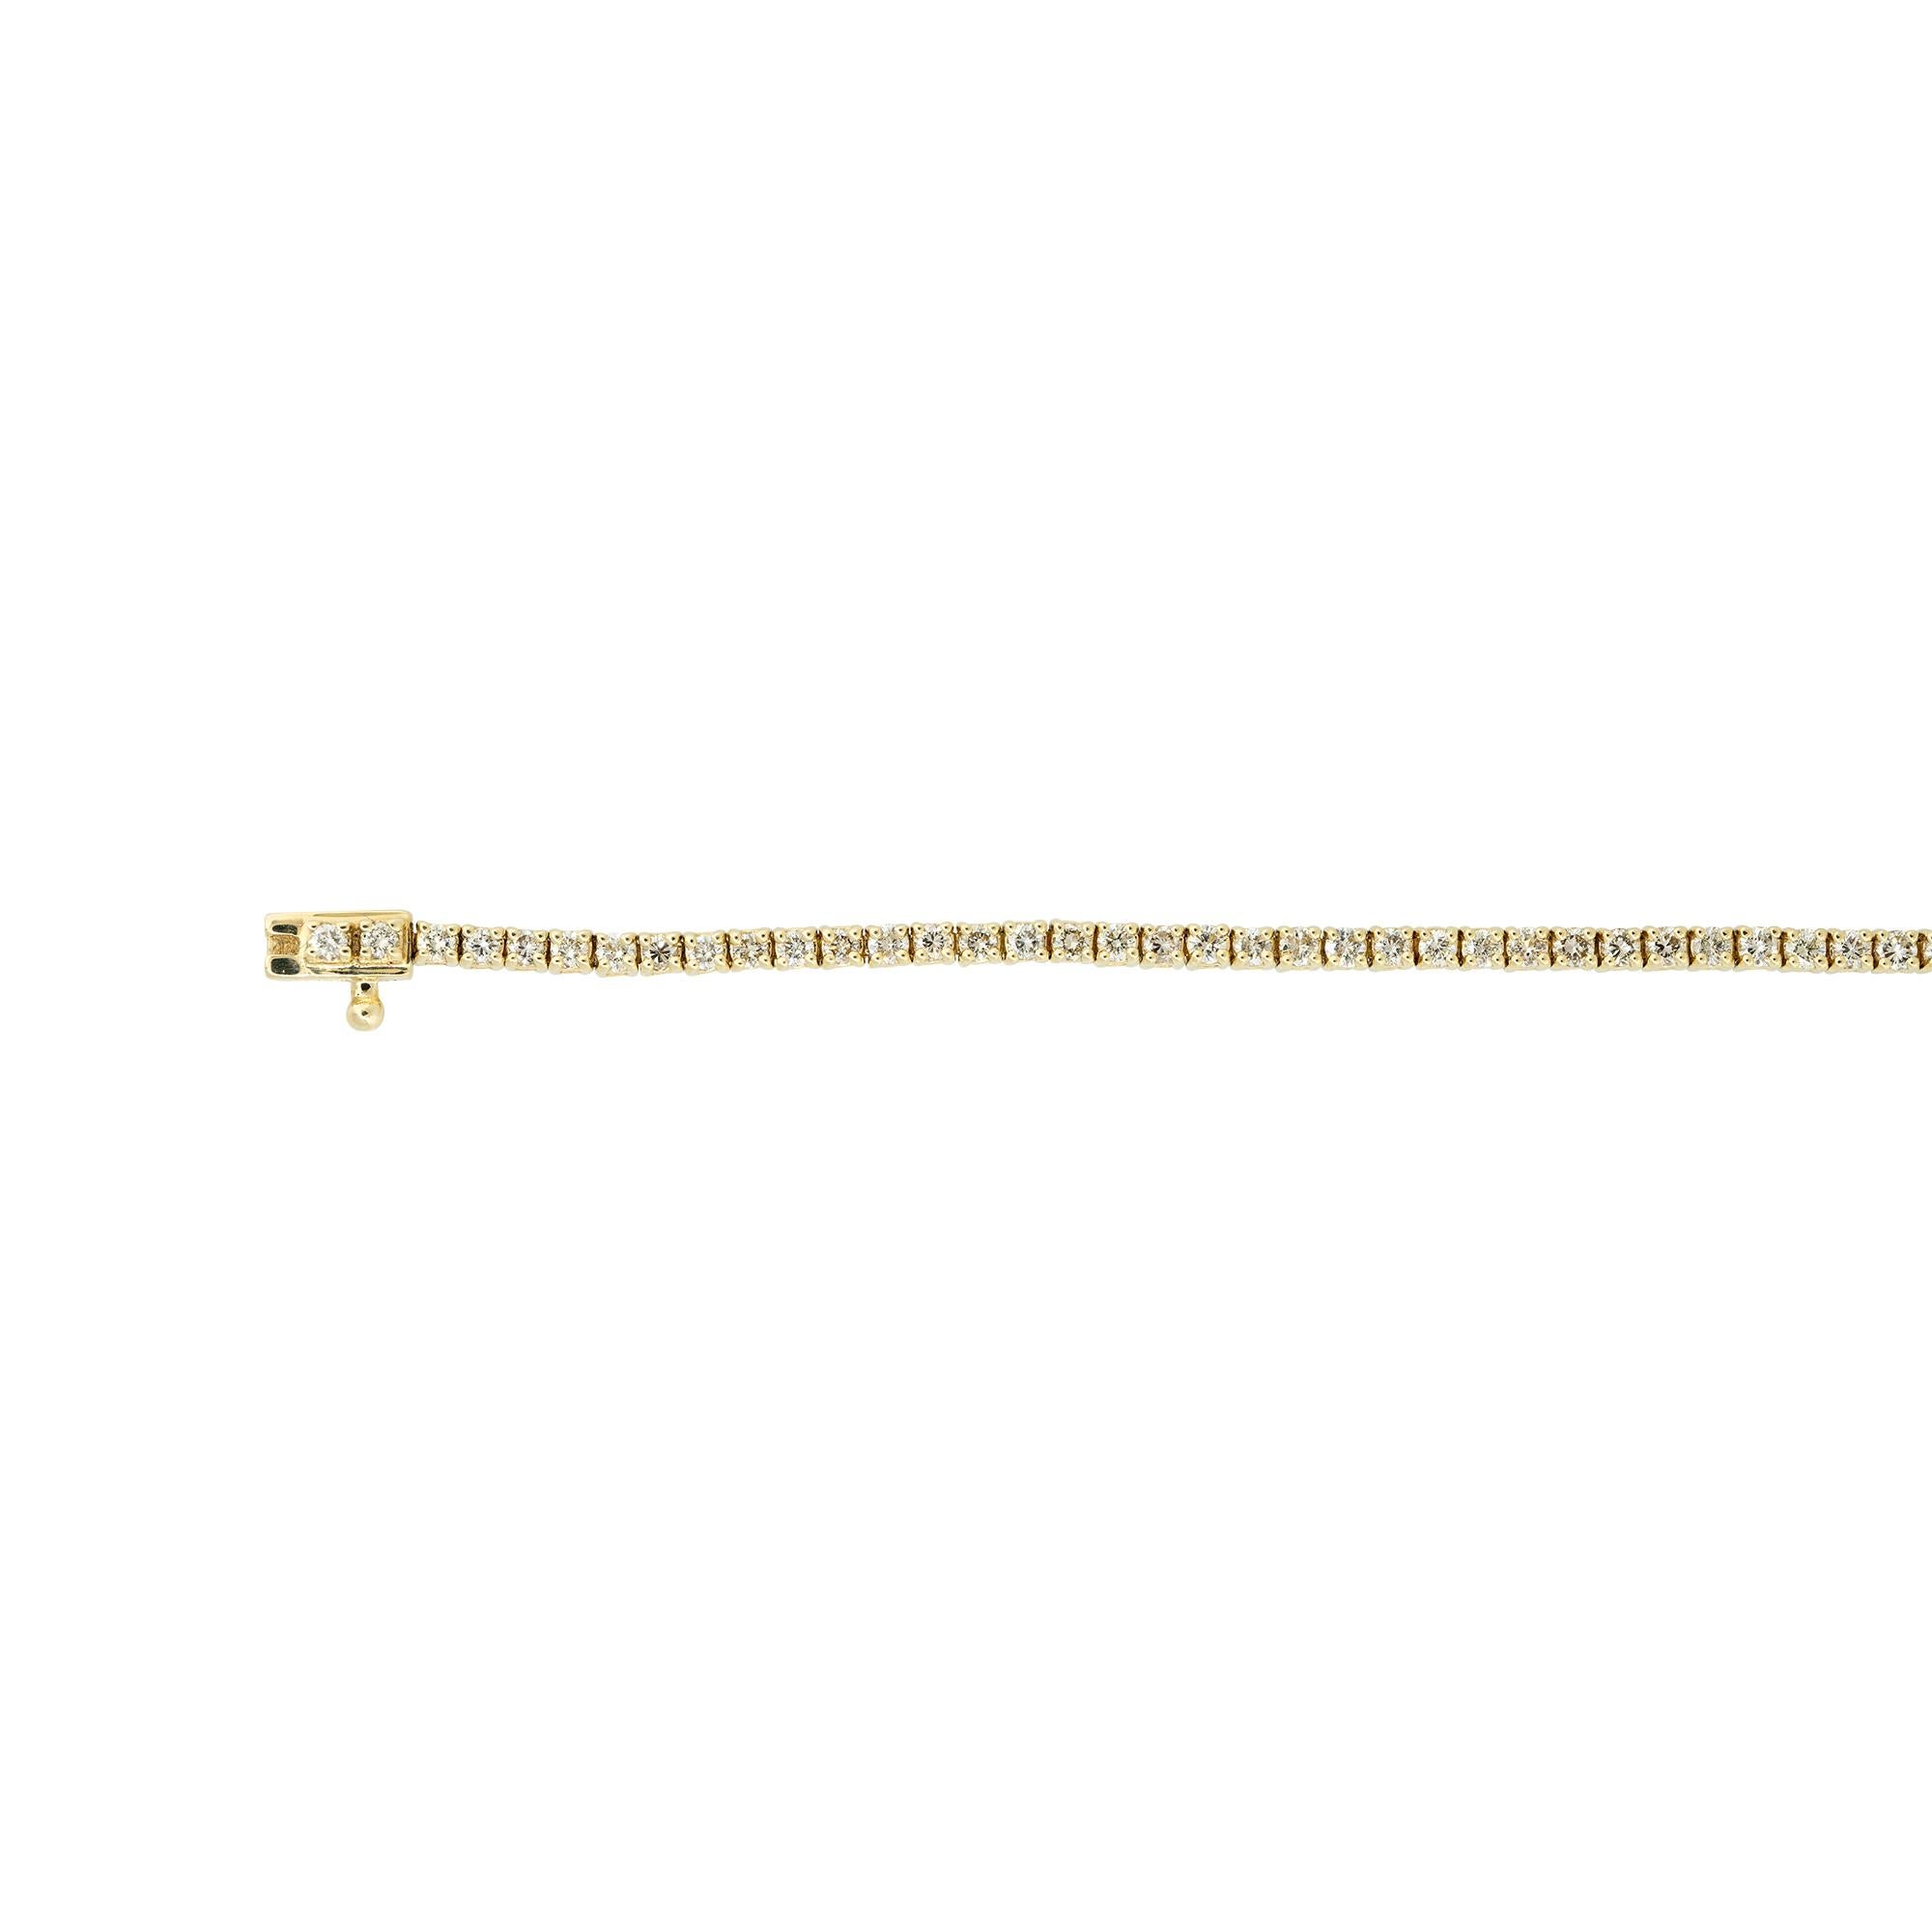 Bracelet tennis en or jaune 14k avec 1,91ctw de diamants

MATERIAL : Or jaune 14k
Détails des diamants : Environ 1,91 ctw de diamants ronds et brillants.
Poids total : 6.3g (4.1dwt) 
Taille : 7